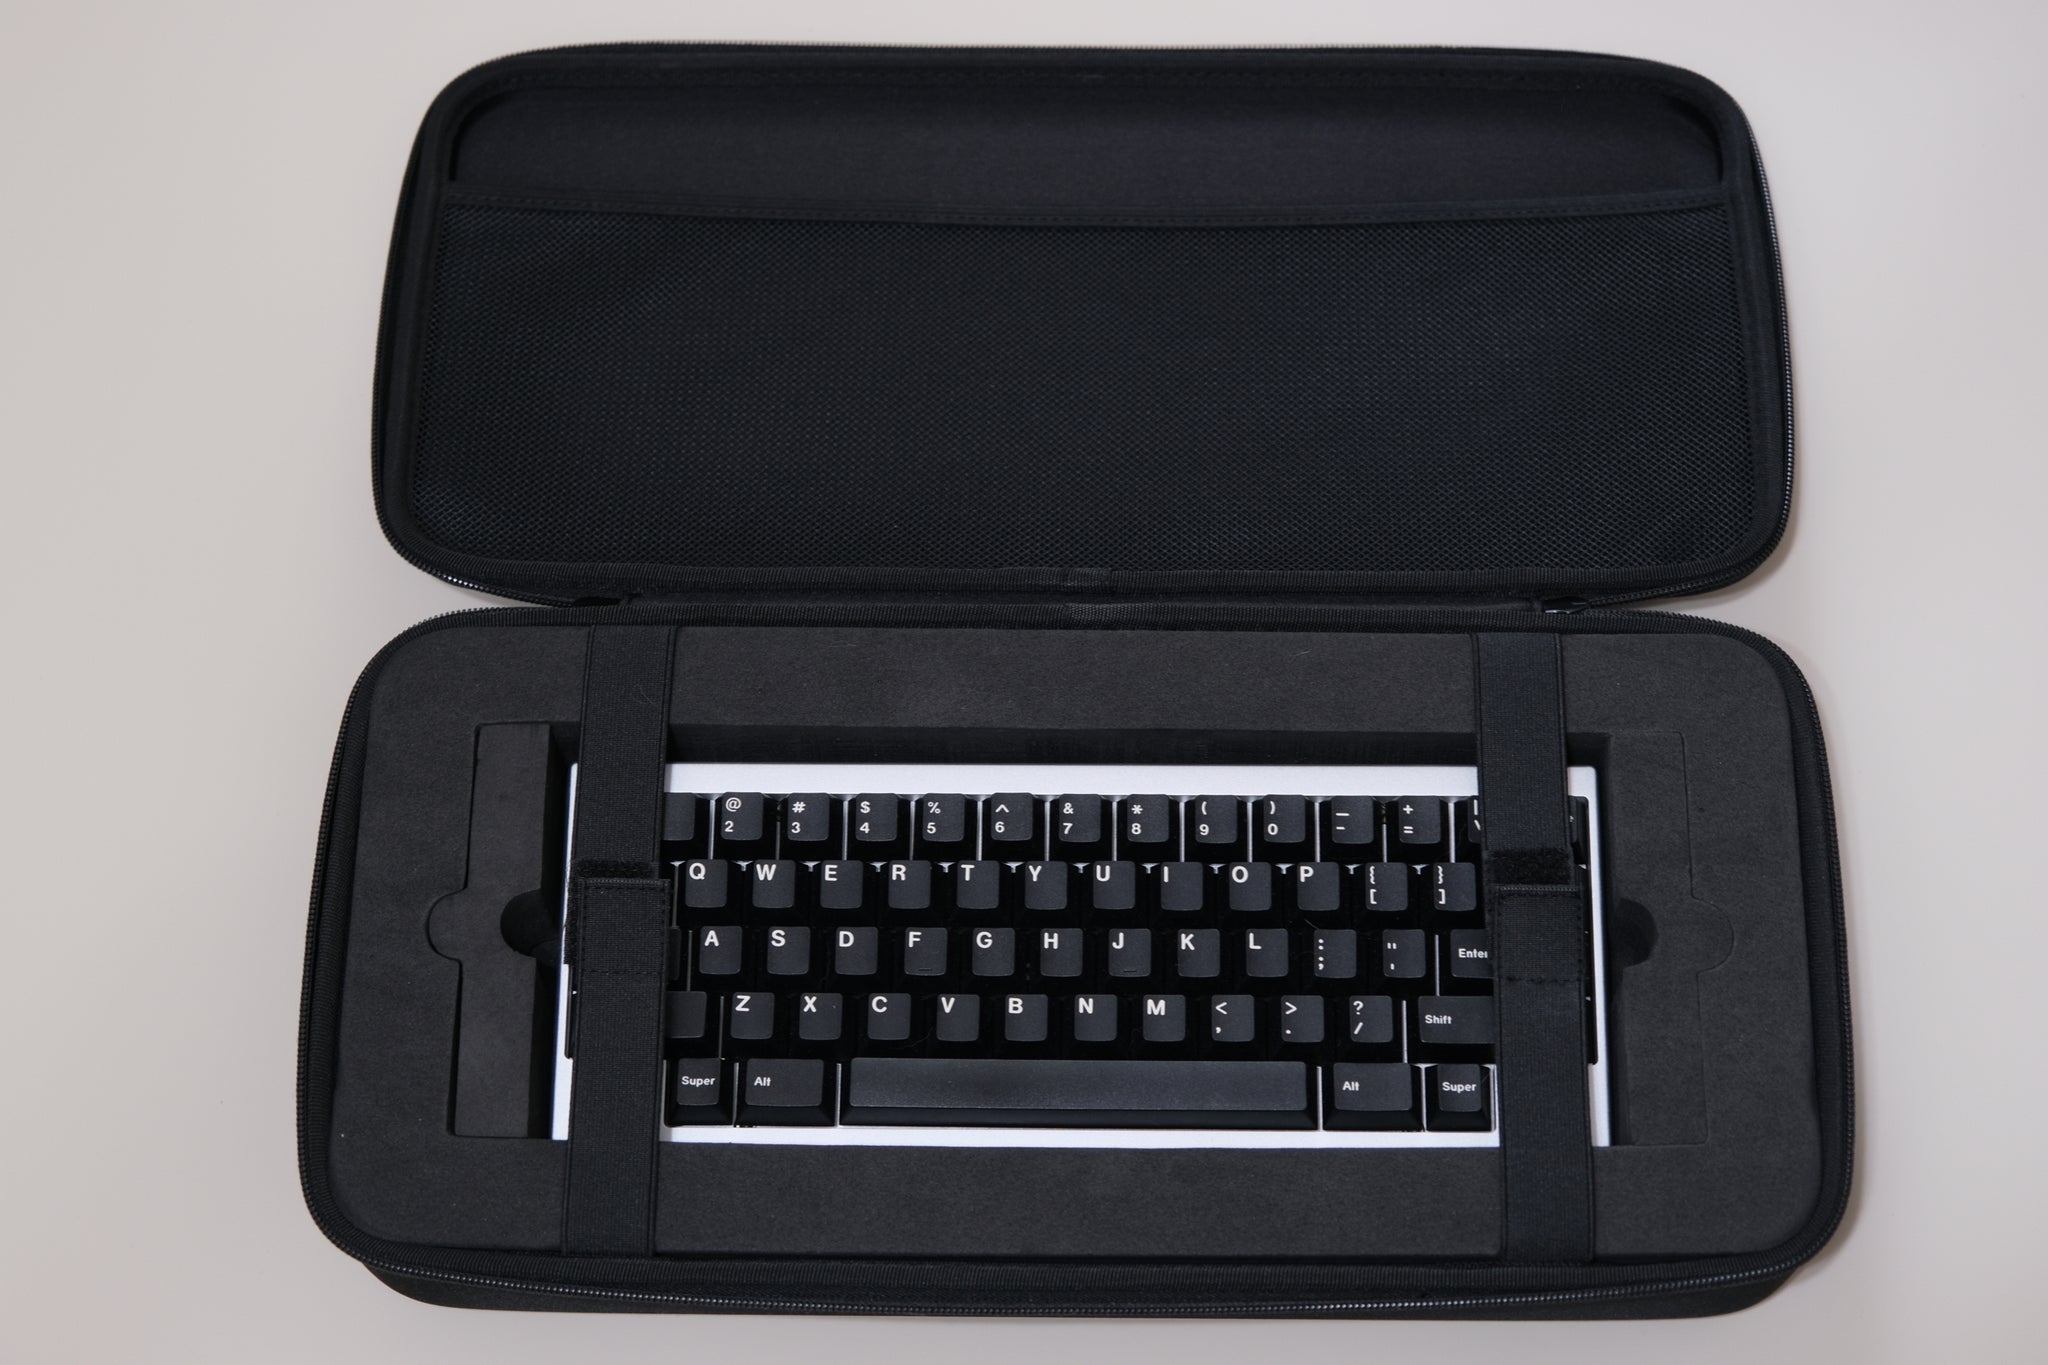 Kibou Keyboard Case